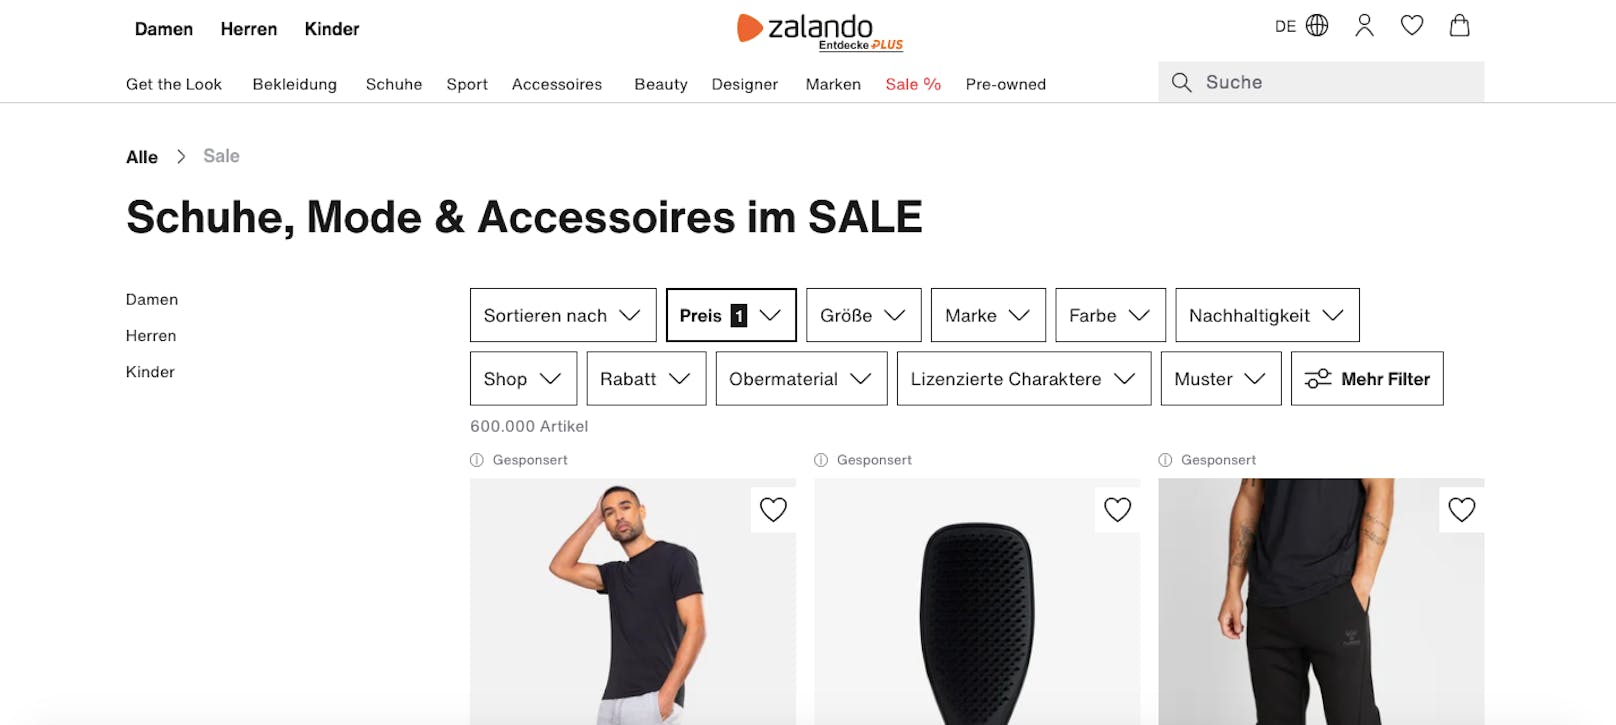 <strong>Zalando:</strong>&nbsp;Der größte Online-Shop Österreichs hat seine eigene Outlet-Seite. Während der gesamten Cyber-Week gibt es täglich wechselnde Aktionen mit bis zu 70 Prozent Rabatt. <em>(<a href="https://www.zalando.de/outlet/?sale=true">Hier geht’s zum Sale!</a>)</em>